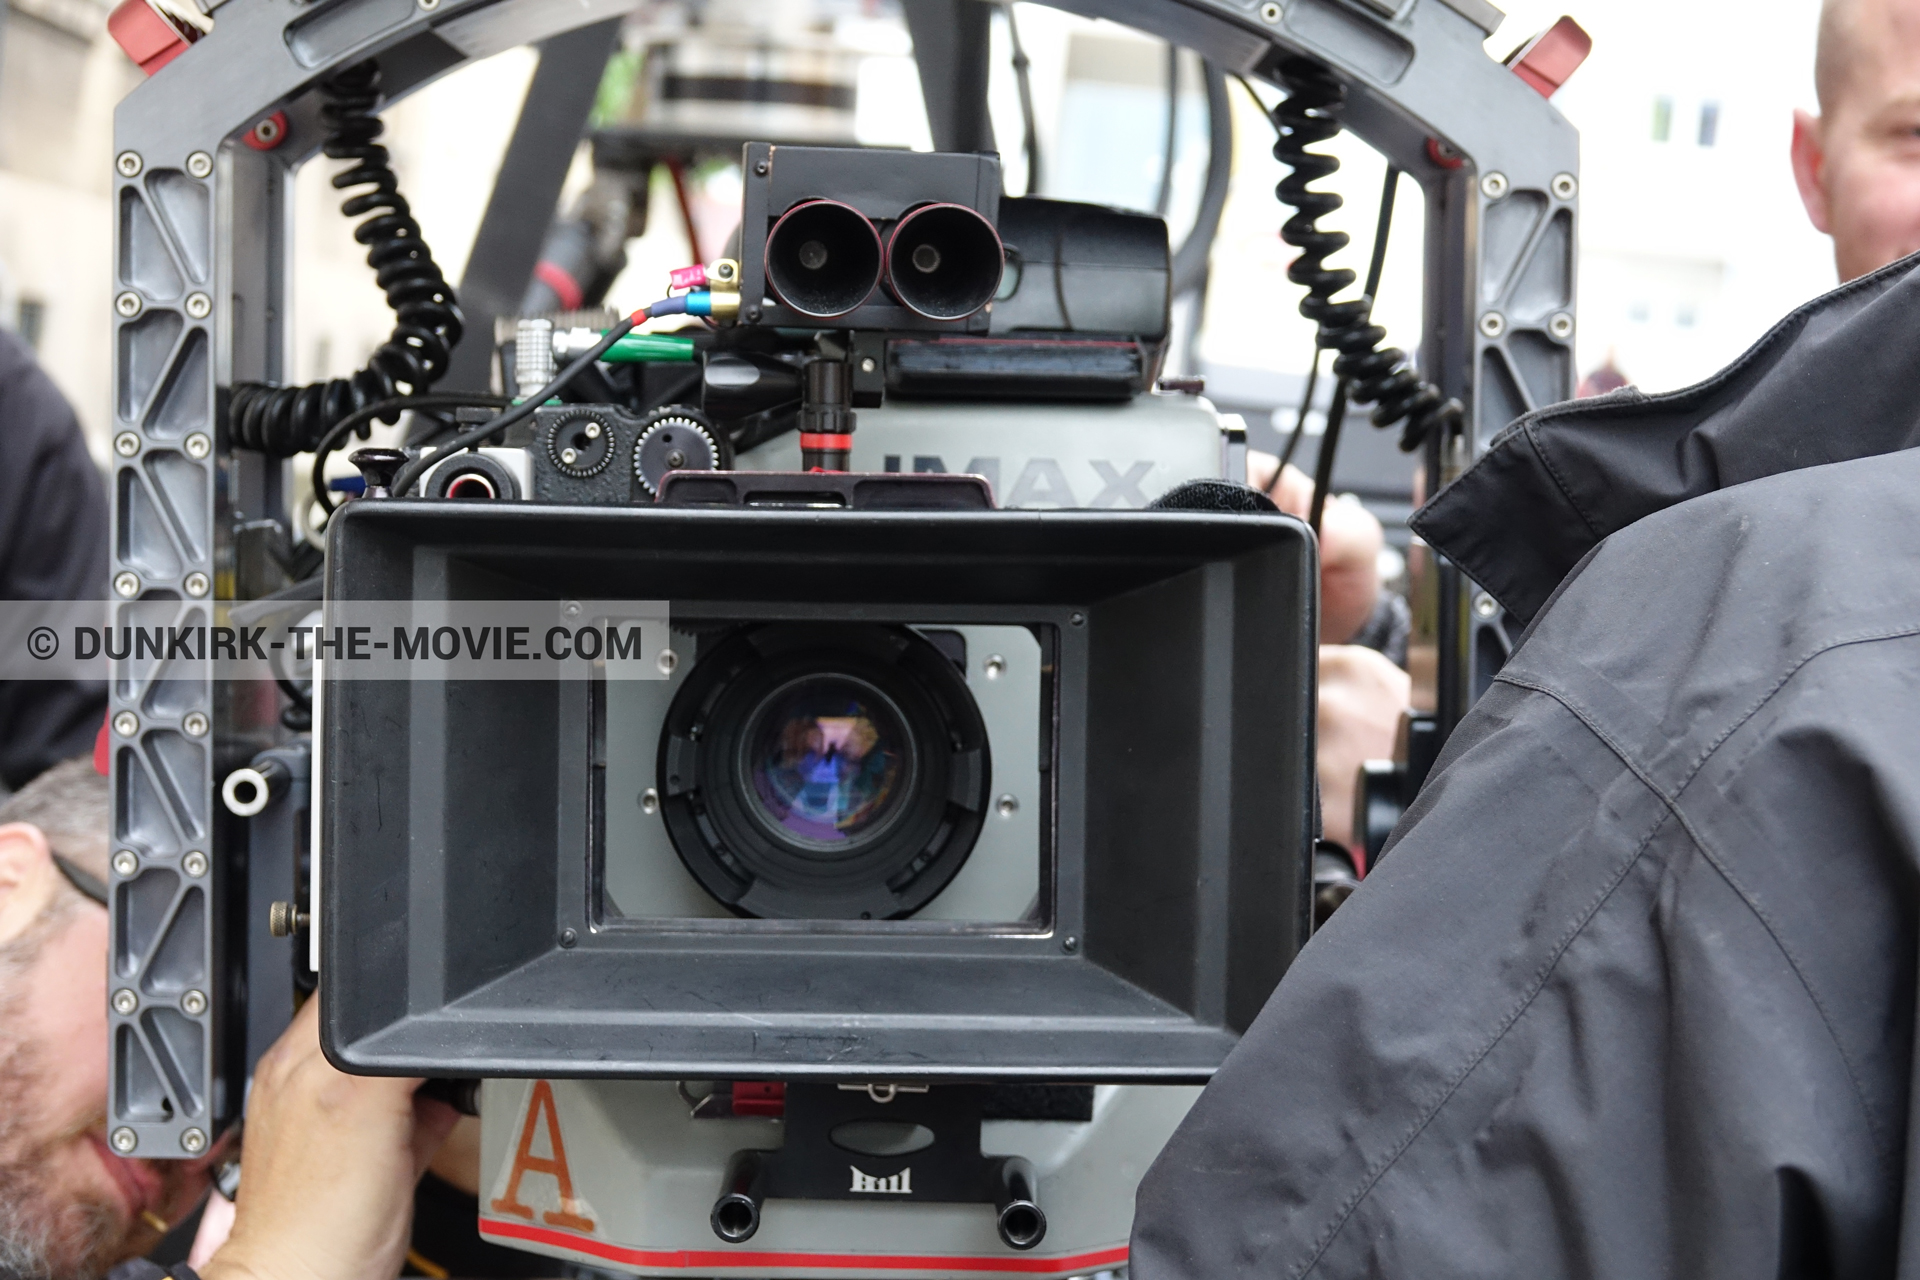 Photo avec caméra IMAX, équipe technique,  des dessous du Film Dunkerque de Nolan